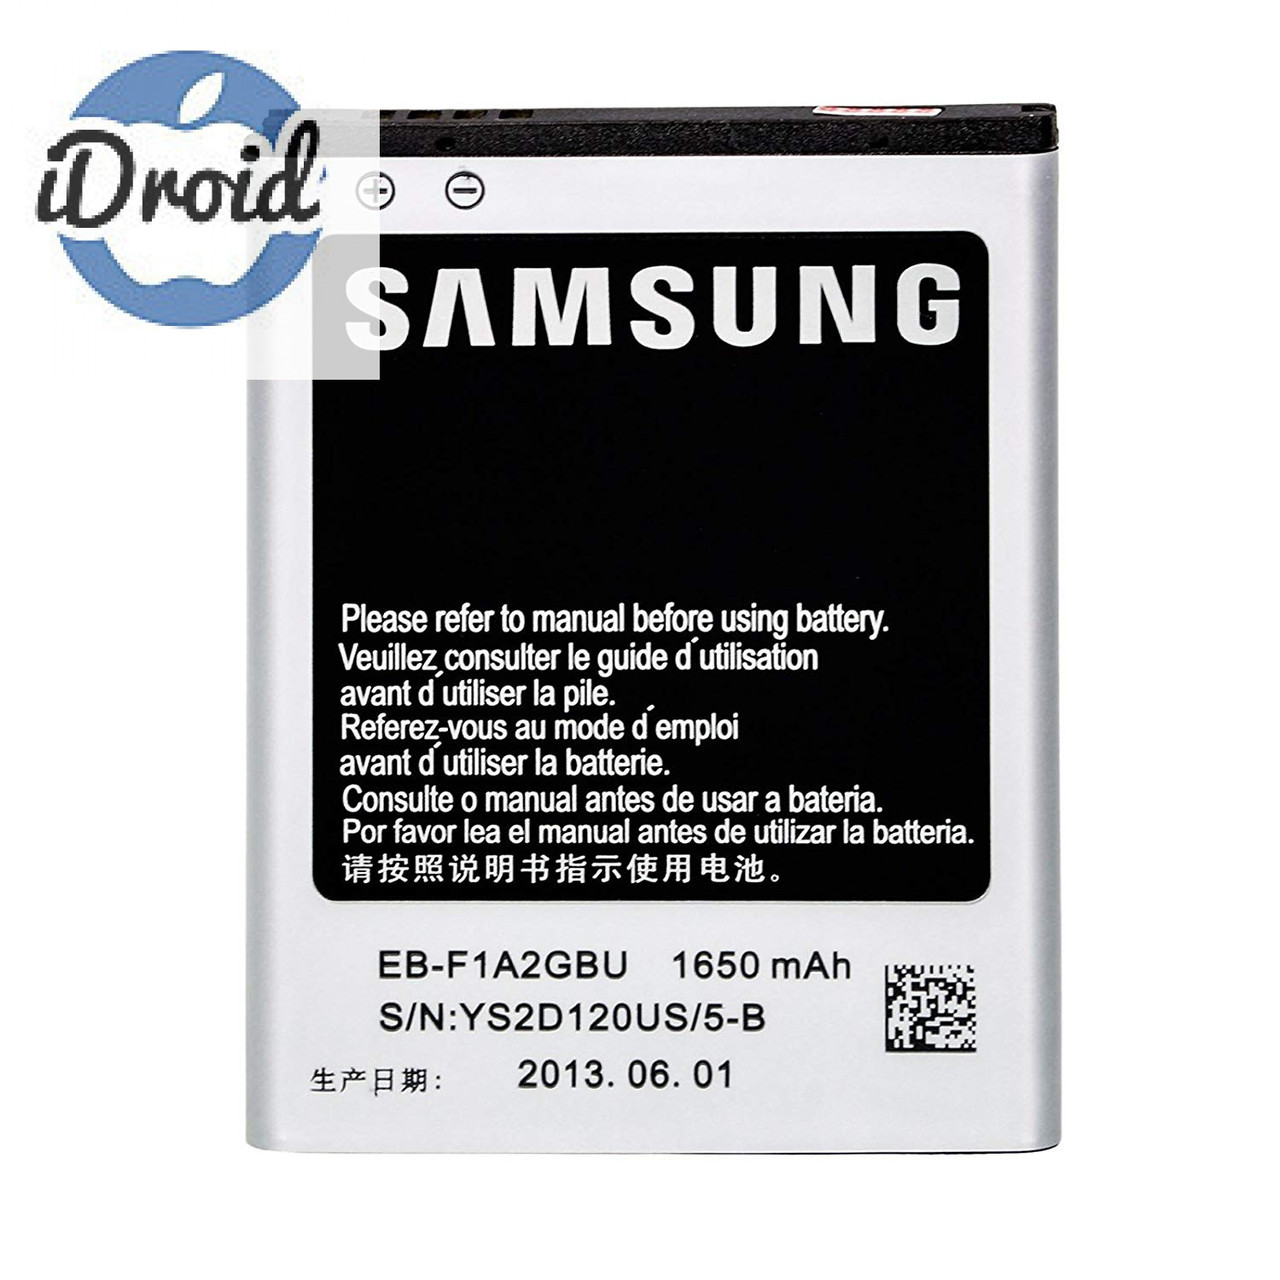 Аккумулятор для Samsung Galaxy S2 i9100, S2 Plus i9105, i9103 (EB-F1A2GBU) аналог